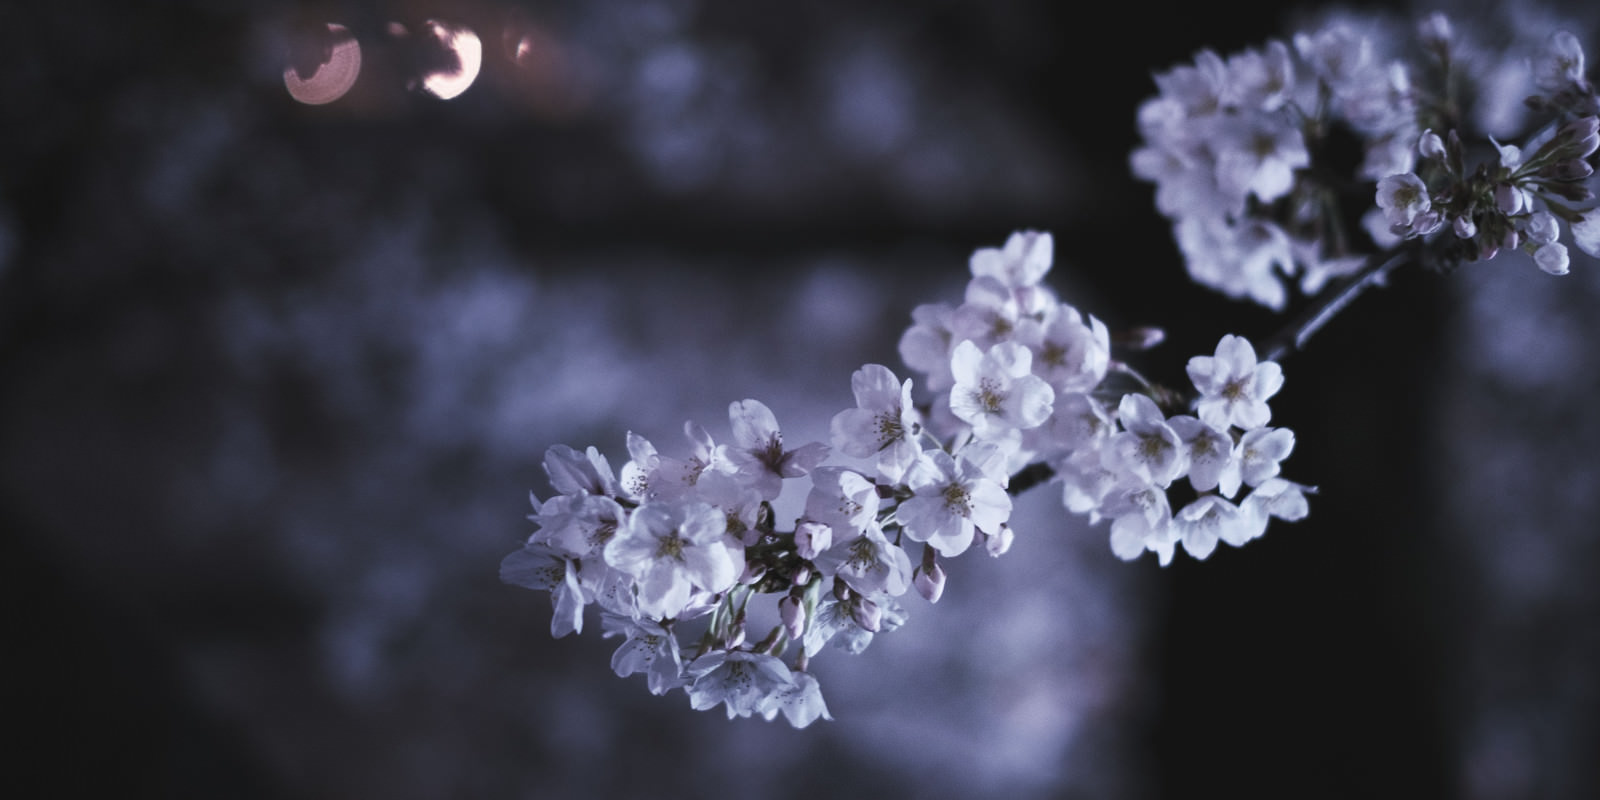 「夜の桜 | フリー素材のぱくたそ」の写真